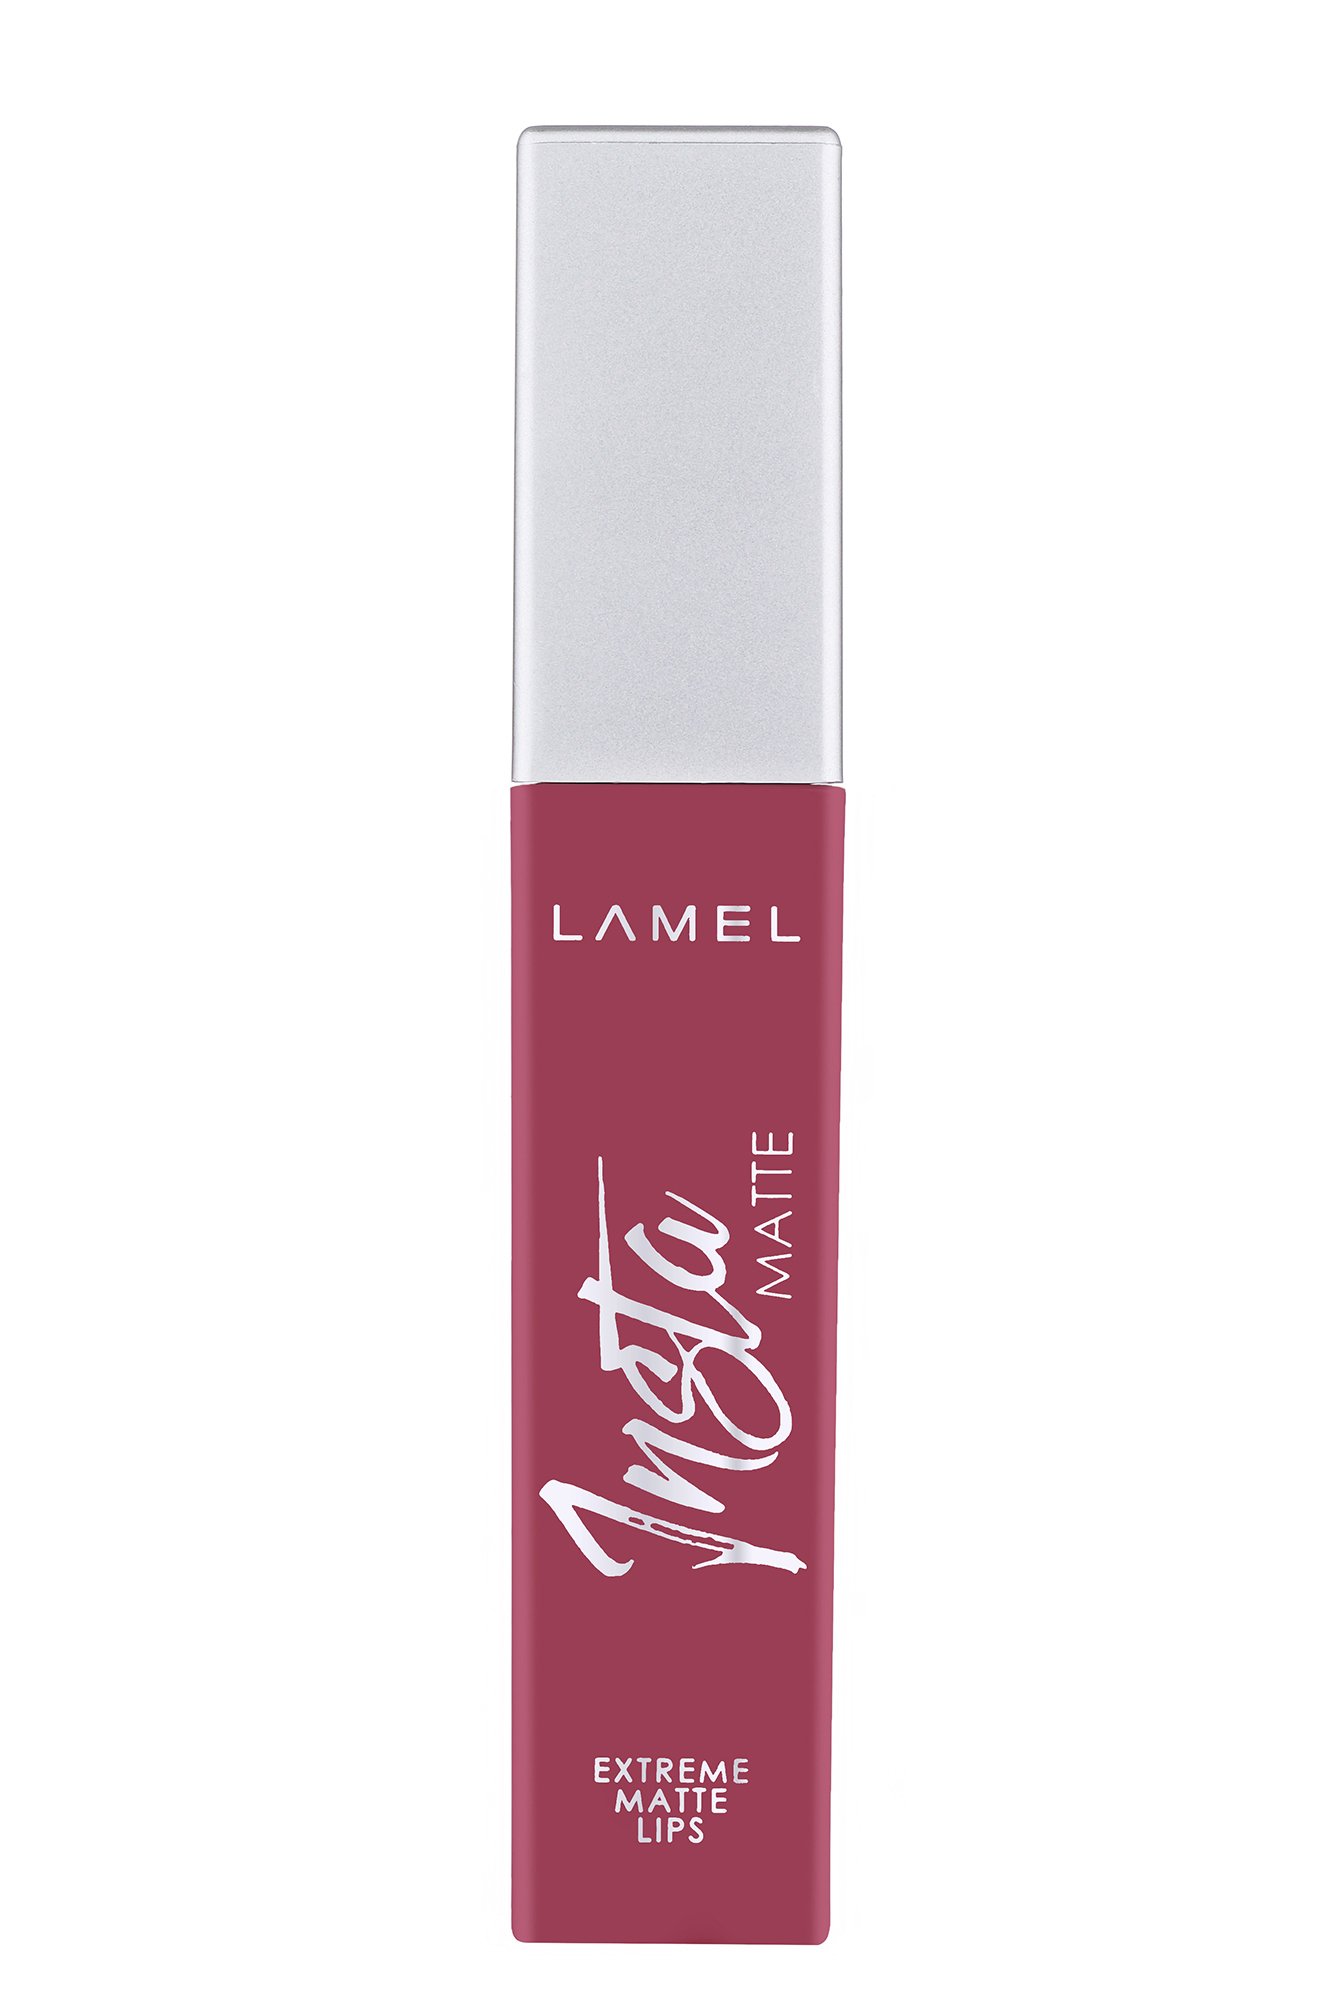 Помада жидкая матовая для губ INSTA Matte Liquid Lipstick т.403 my rosy 6 мл LAMEL Professional